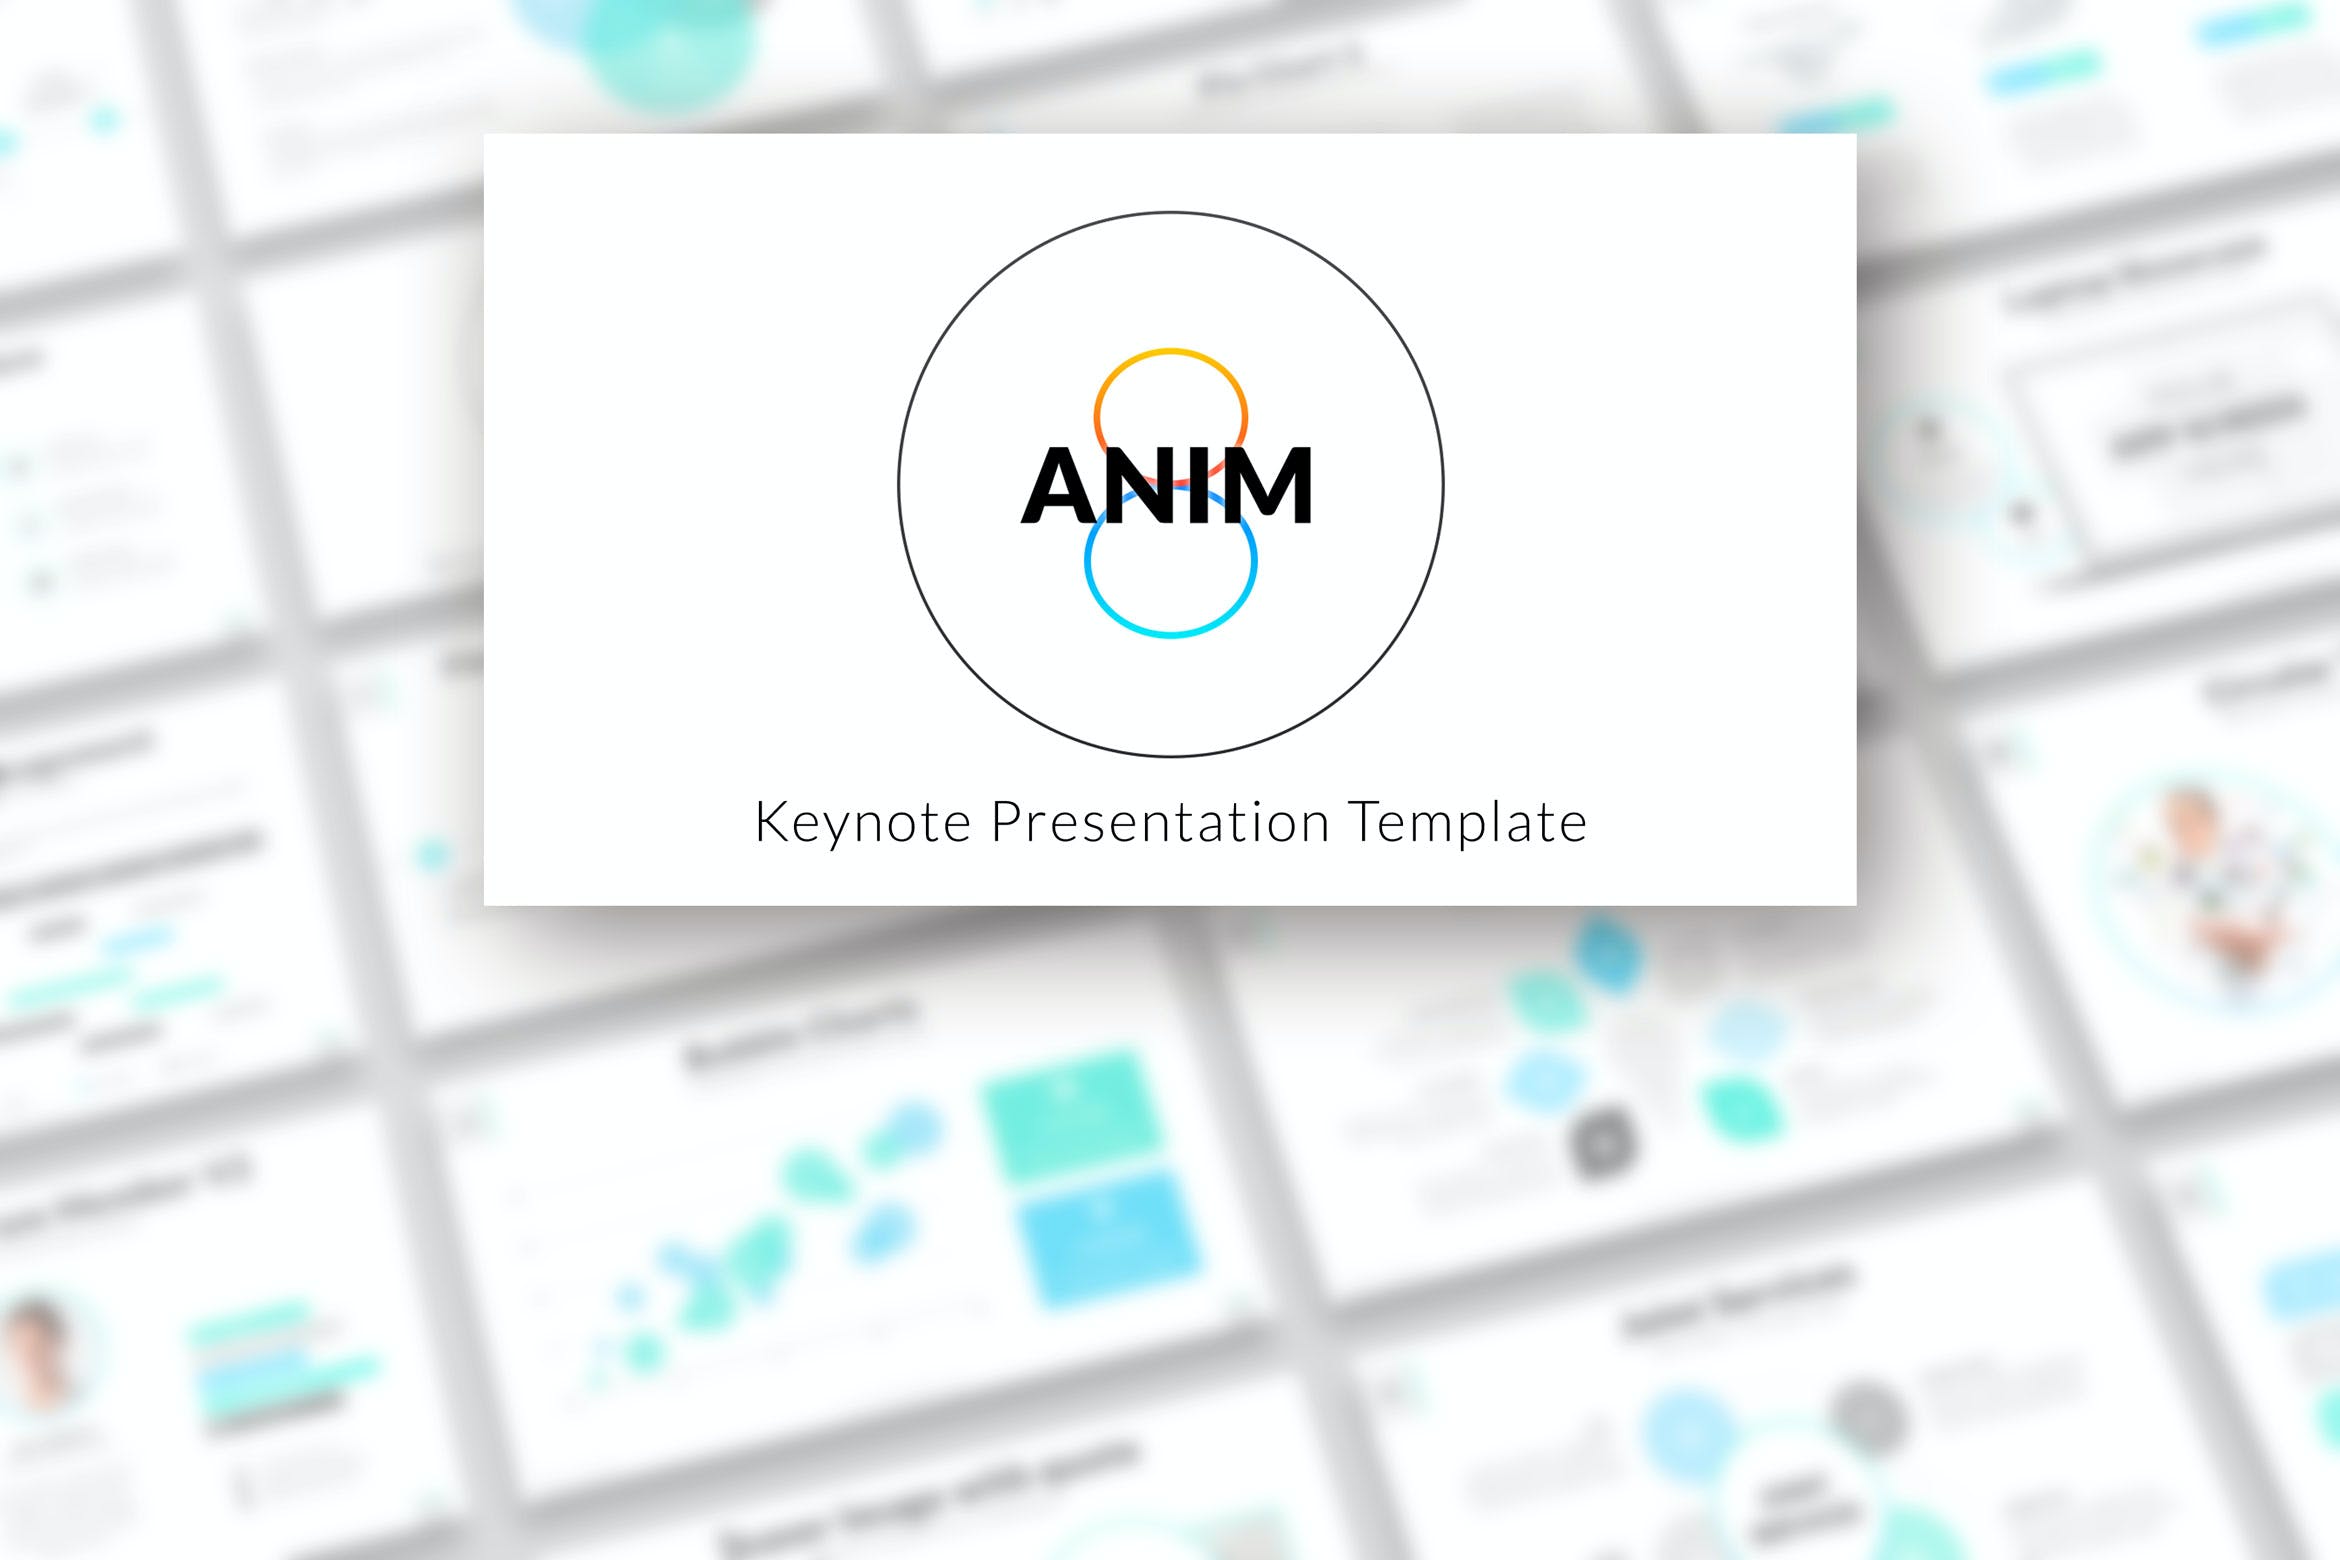 1060 商业报告或创意设计演示Keynote幻灯片模板 Anim8 – Keynote Presentation Template